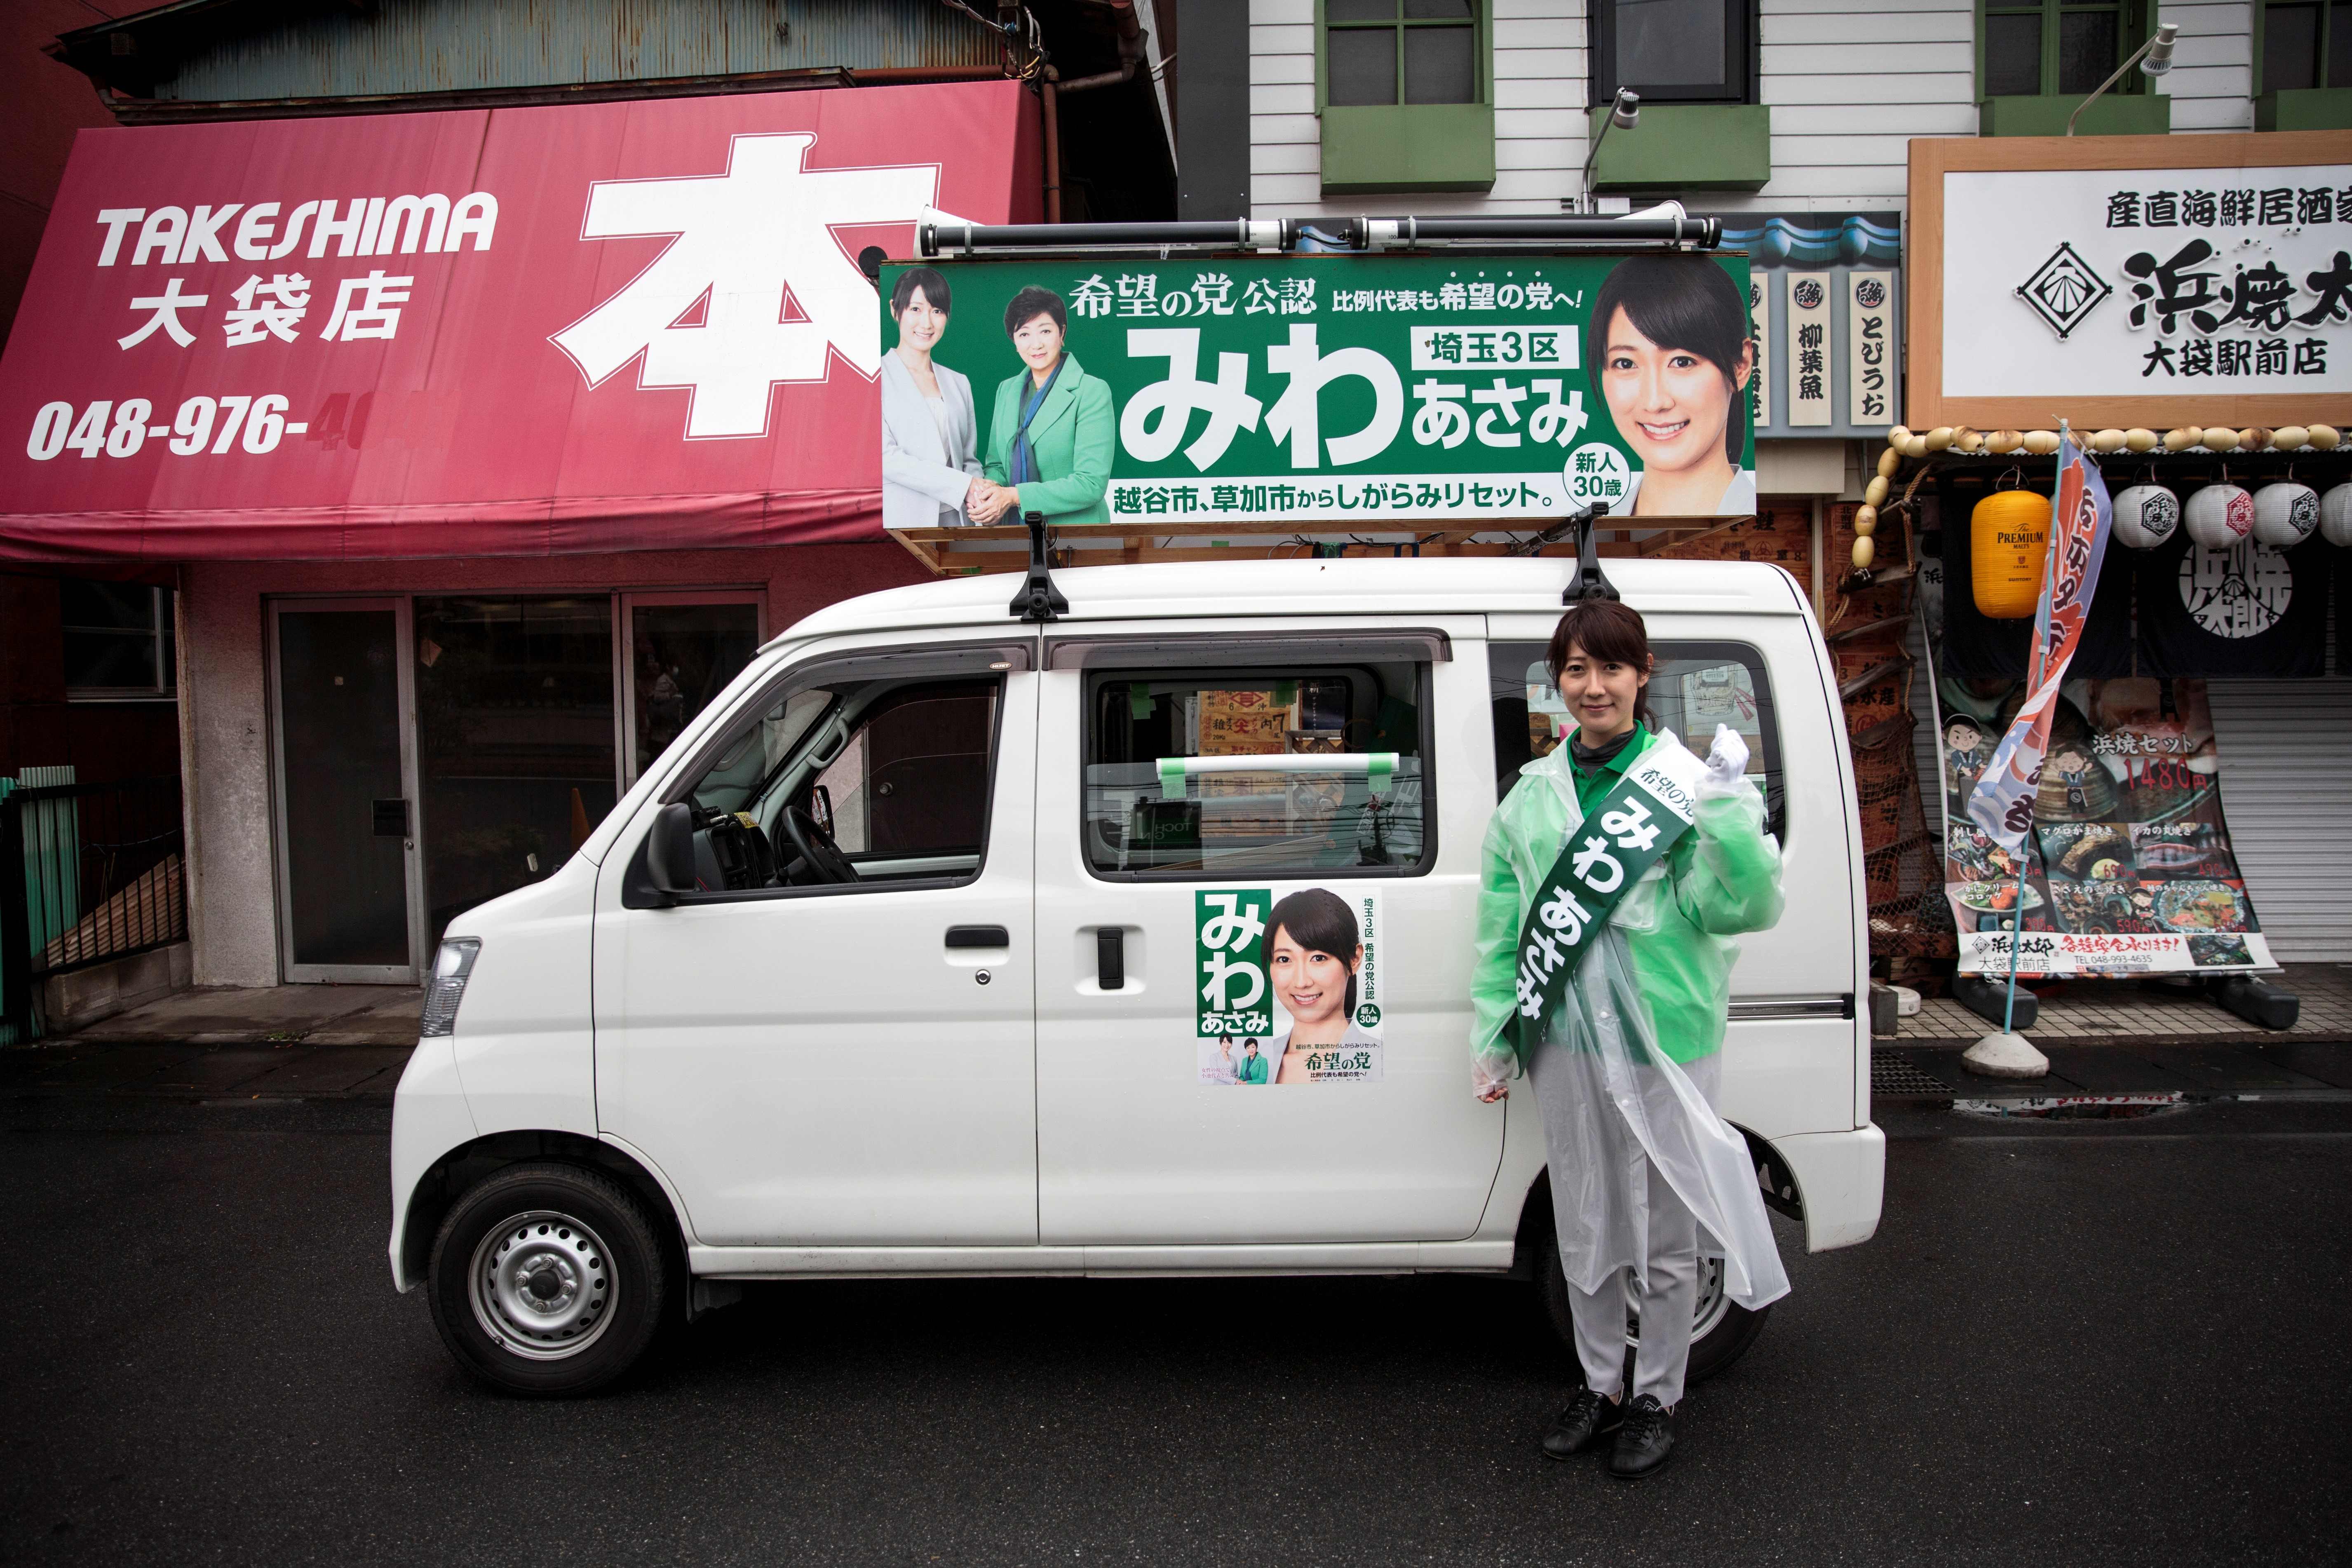 مرشحة حزب الأمل فى جولتها بشوارع طوكيو